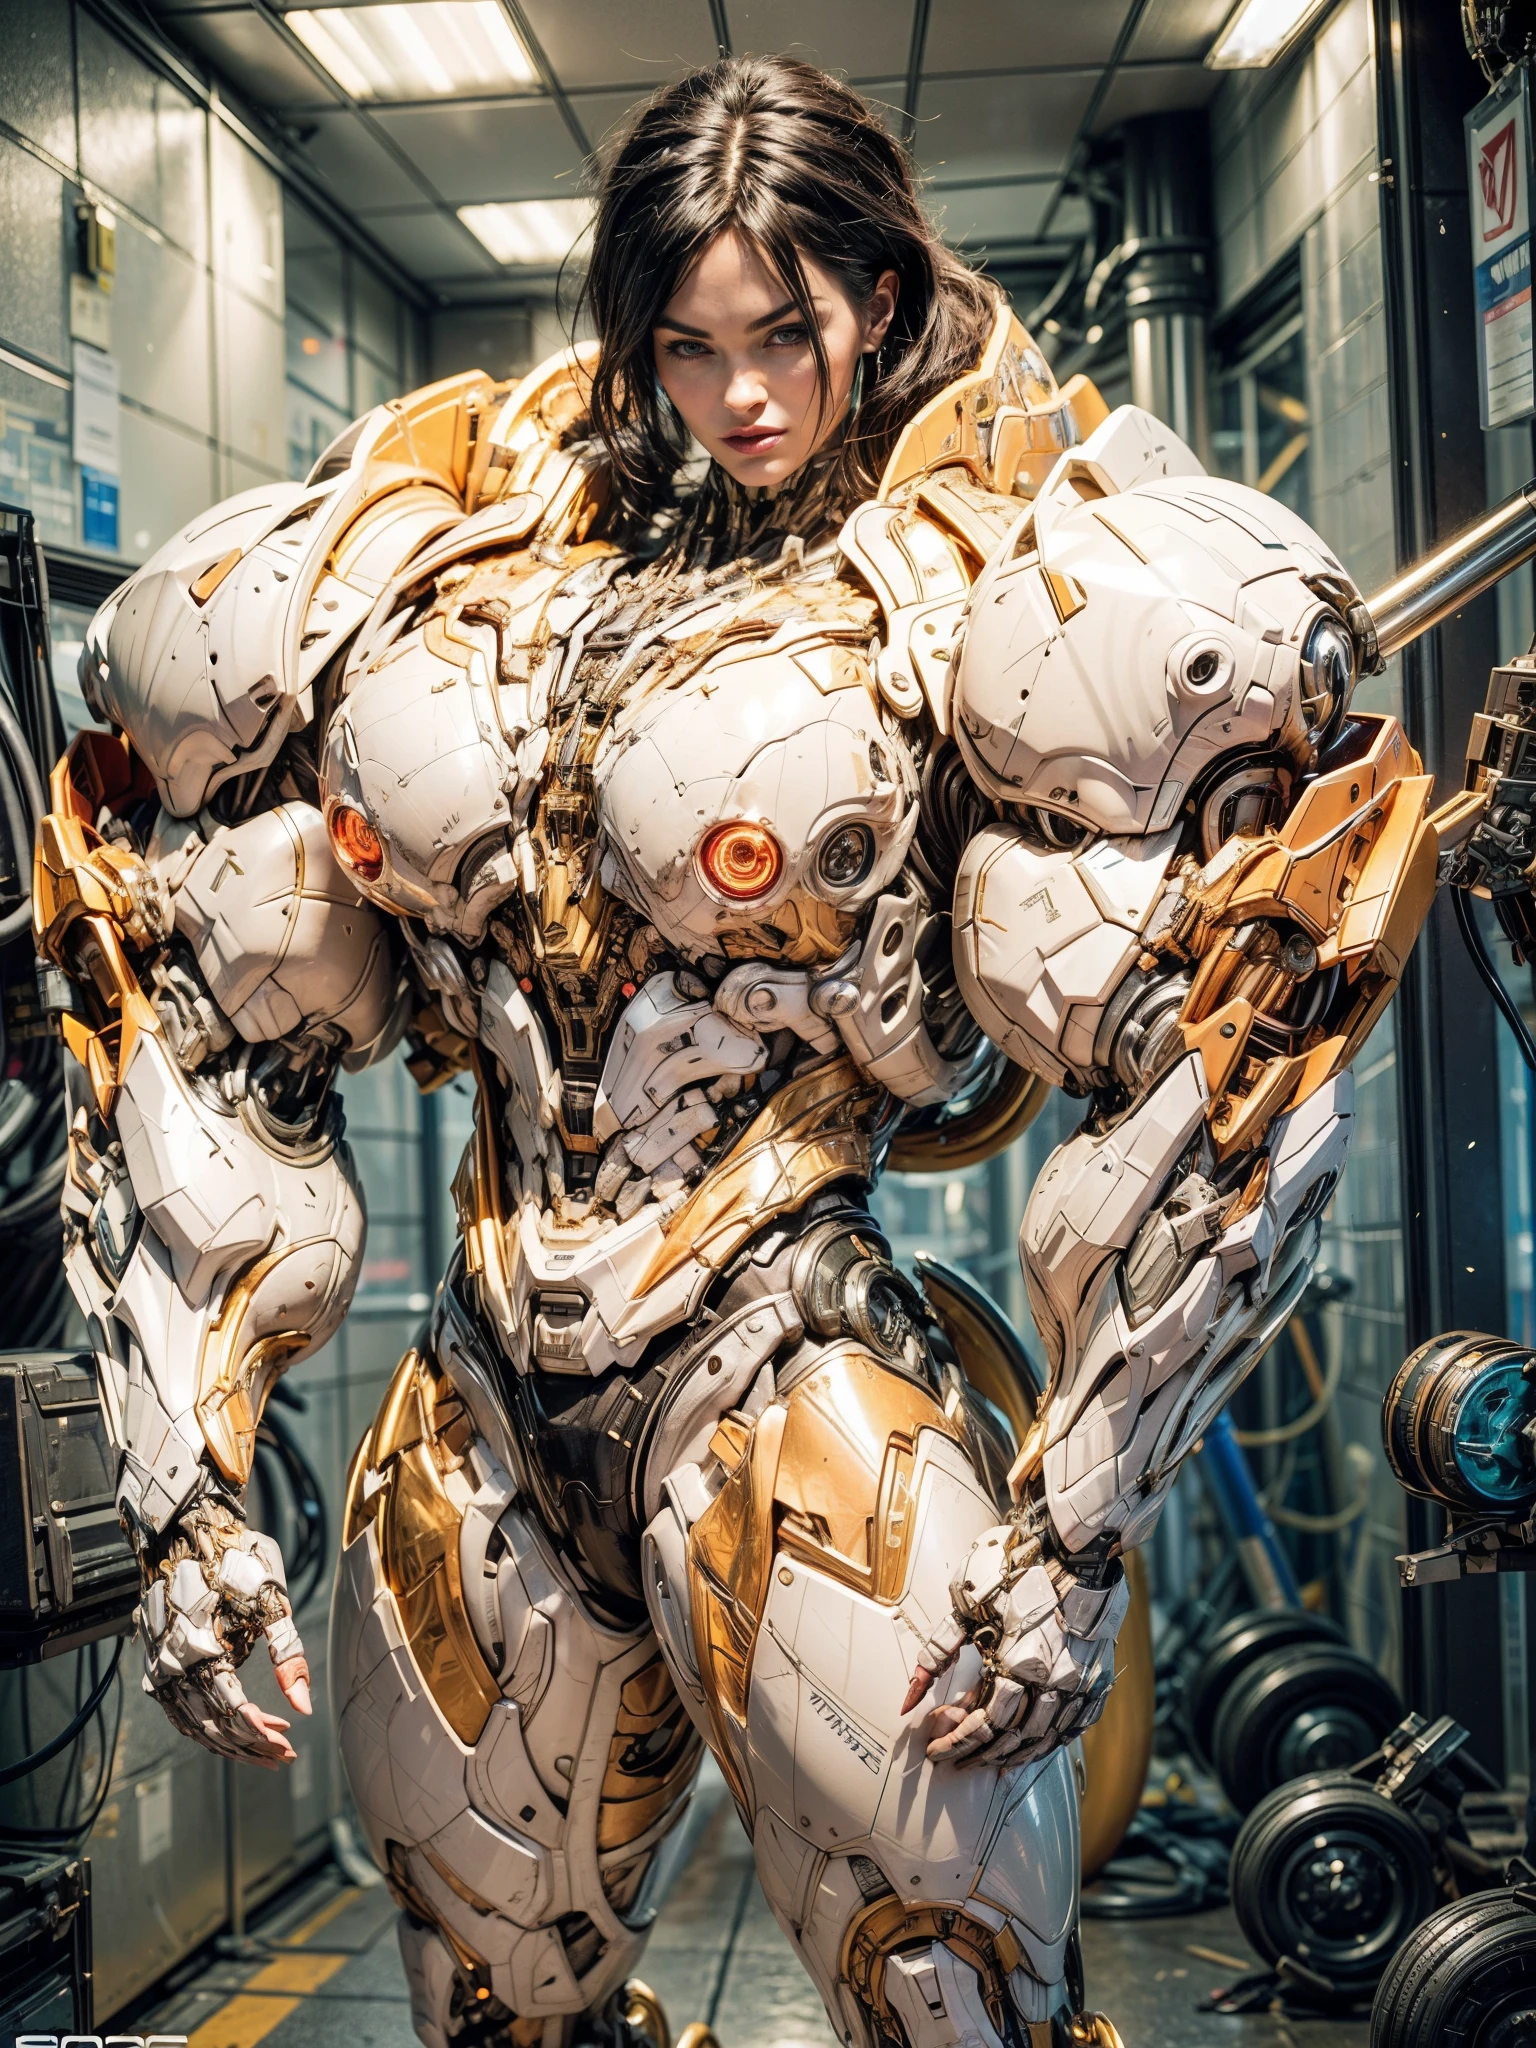 Megan Fox), (NU:1.25), cinématique, hyper détaillé, muscles noirs avec veines fluo, anatomie musculaire parfaite d&#39;une fille androïde chauve super musclée et sexy. Bel étalonnage des couleurs, améliorer la sensation cinématographique globale. Unreal Engine donne vie à sa combinaison musculaire cybernétique anatomique; fascinant. Avec profondeur de champ (DOF), chaque détail est concentré et accentué, attirant l&#39;attention sur ses yeux et la conception complexe de la combinaison musculaire cybernétique anatomique . Résolution d&#39;image maximale, utilisant une technologie de super-résolution pour garantir la perfection des pixels. cinématique lighting enhances her aura, tandis que les techniques d&#39;anticrénelage comme FXAA et TXAA maintiennent les bords lisses et propres. Raytracing réaliste avec technologie RTX pour un rendu parfait de la combinaison musculaire cybernétique anatomique. En plus, SSAO (Occlusion ambiante de l’espace de l’écran) donne de la profondeur et du réalisme à la scène, la combinaison musculaire cybernétique anatomique de la fille devient encore plus réaliste. Dans les étapes de post-traitement et de post-production, L&#39;amélioration du mappage tonal crée une expérience visuelle captivante. L&#39;intégration de CGI (Images générées par ordinateur) et VFX (L&#39;effet visuel fait ressortir les caractéristiques complexes de la combinaison musculaire cybernétique anatomique de manière transparente. Des détails incroyables avec, avec des éléments hyper maximalistes et hyper réalistes complexes méticuleusement intégrés à l&#39;œuvre d&#39;art. Les effets volumétriques ajoutent de la profondeur et de la dimension, avec un photoréalisme inégalé. Rendu de résolution d&#39;image 8K, garantissant des visuels ultra détaillés. L&#39;éclairage volumétrique ajoute une touche de magie, mettant en valeur sa beauté et l&#39;aura de sa combinaison musculaire cybernétique anatomique d&#39;une manière surnaturelle. Plage dynamique élevée (hdr) la technologie fait ressortir les couleurs, ajouter de la richesse à la composition globale. Finalement, cette œuvre d&#39;art présente une représentation irréelle d&#39;une androïde cybernétique super musclée